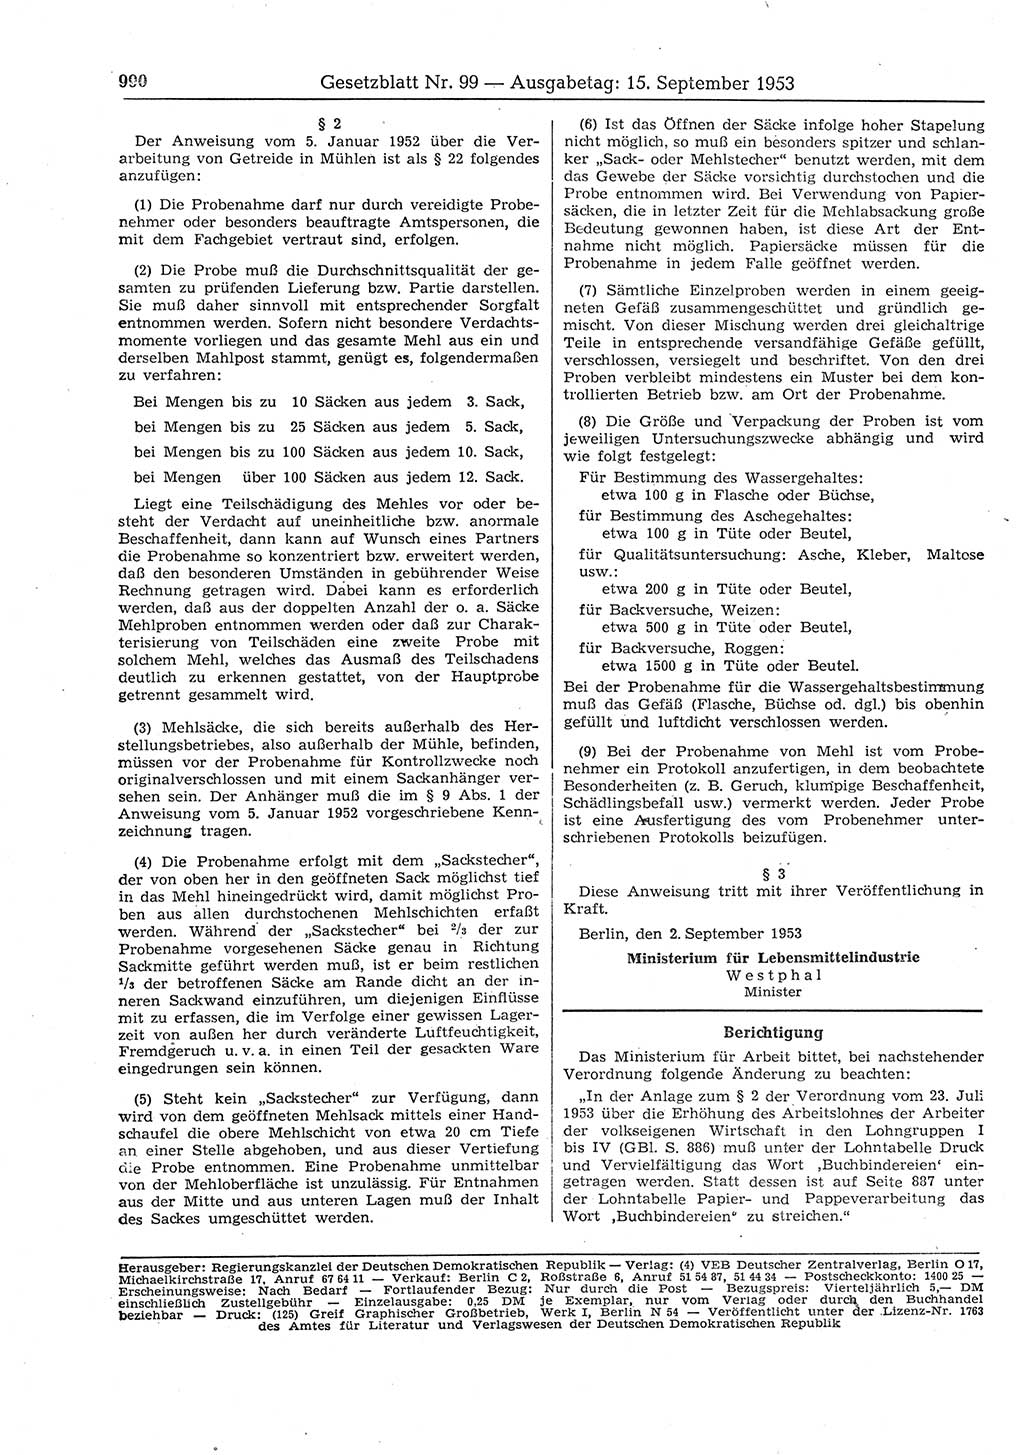 Gesetzblatt (GBl.) der Deutschen Demokratischen Republik (DDR) 1953, Seite 990 (GBl. DDR 1953, S. 990)